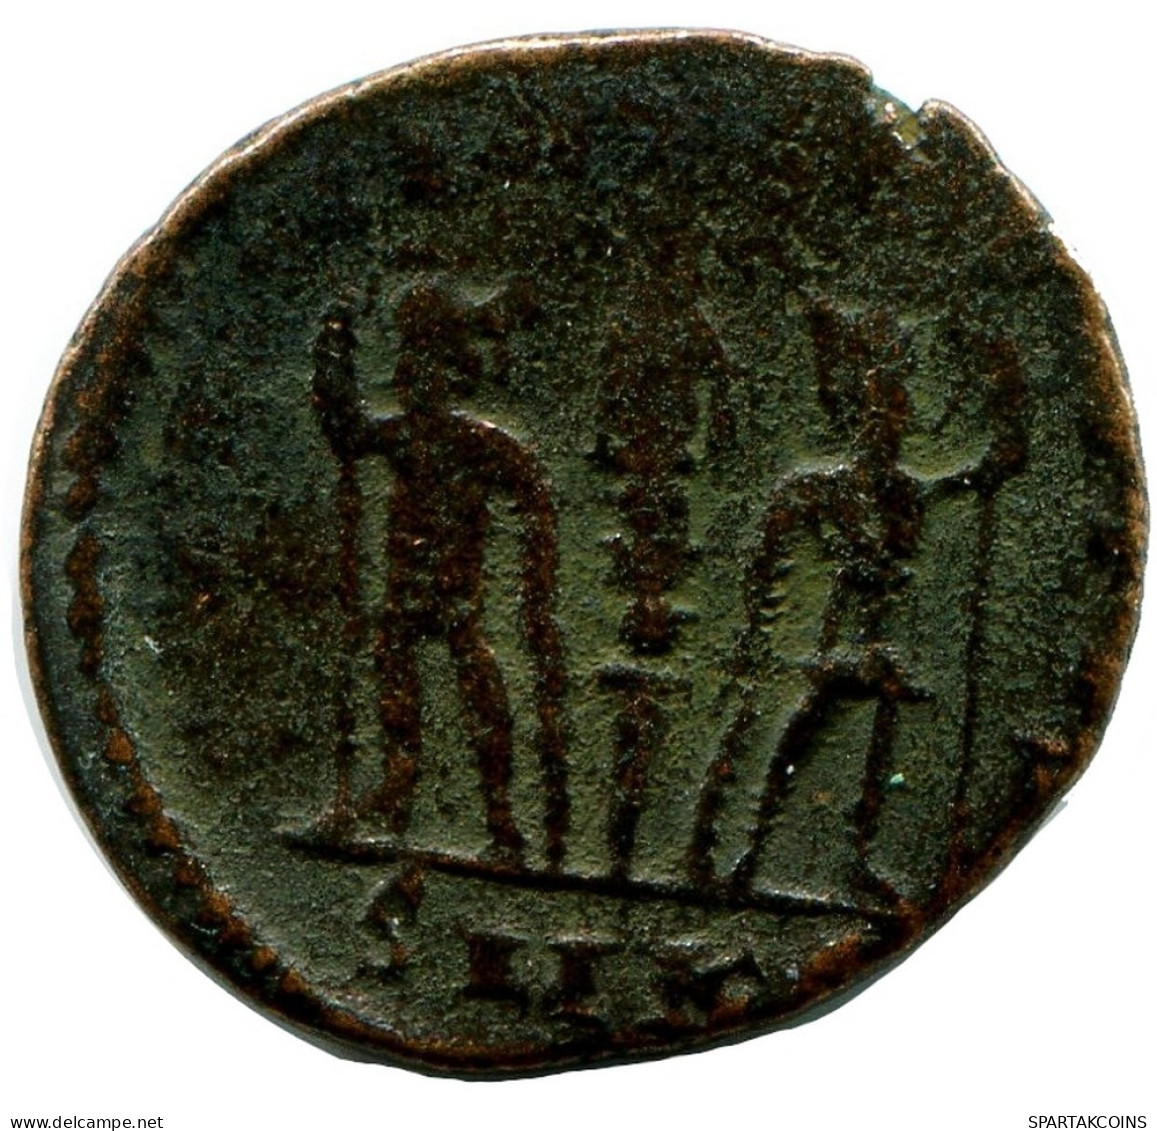 ROMAN Pièce MINTED IN CYZICUS FOUND IN IHNASYAH HOARD EGYPT #ANC11049.14.F.A - Der Christlischen Kaiser (307 / 363)